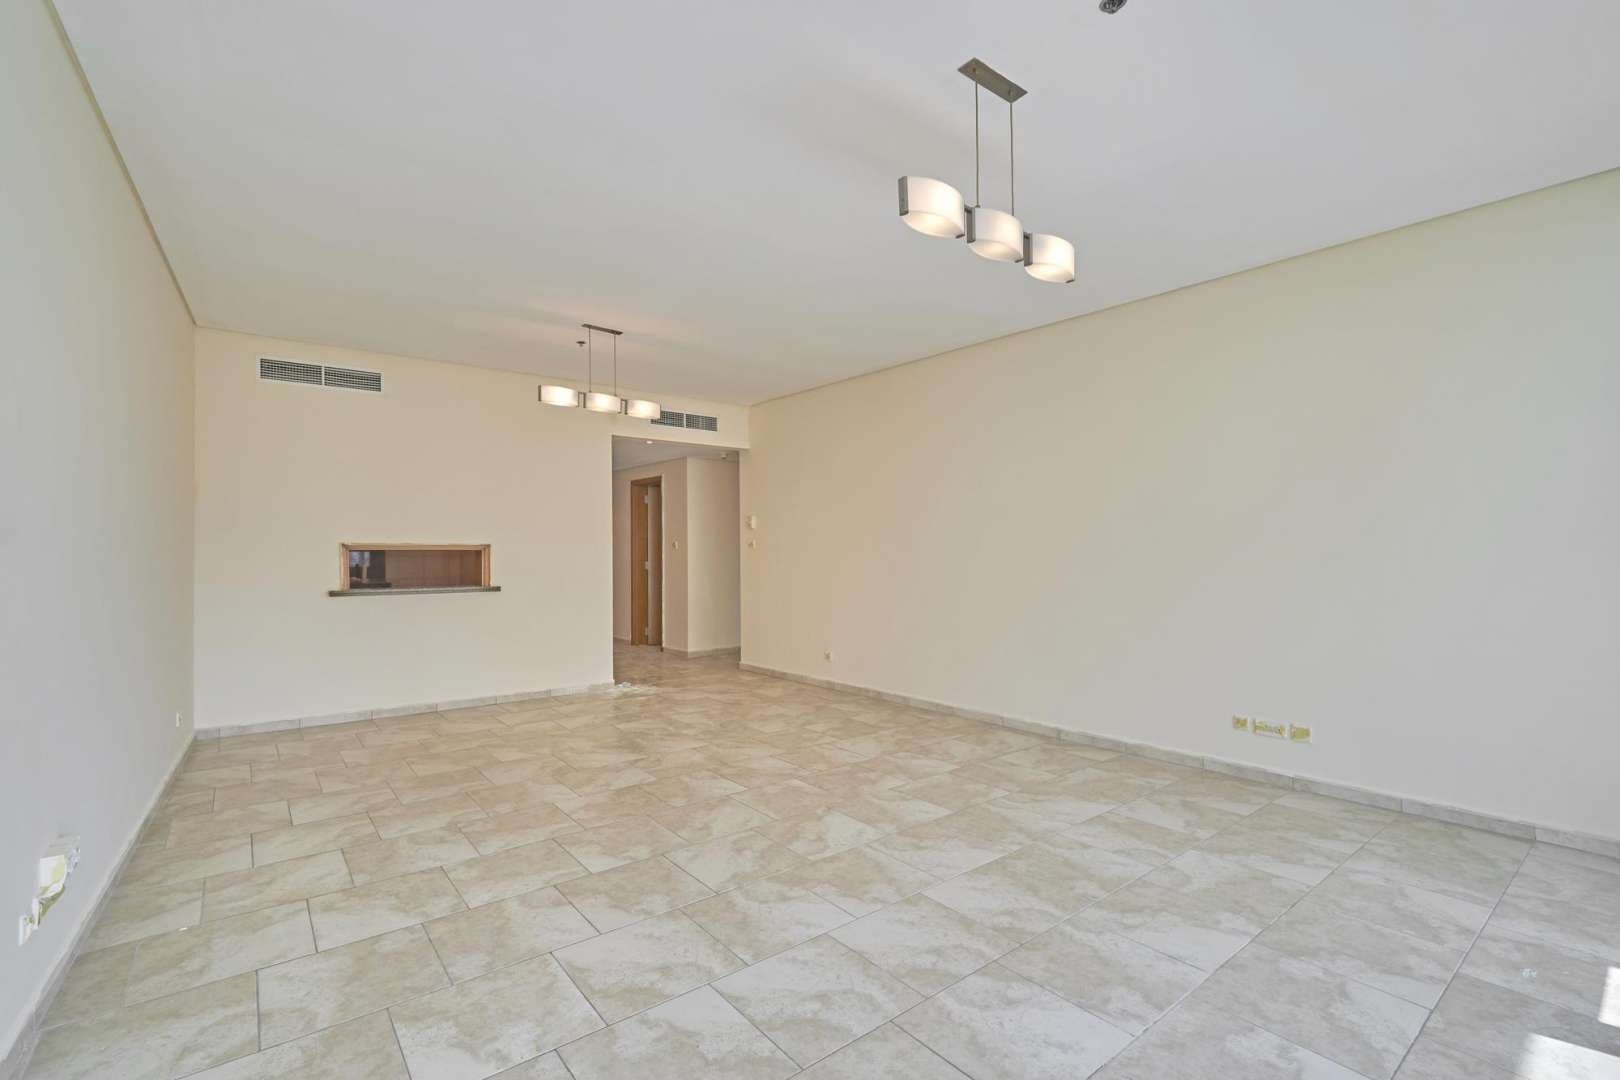 2 Bedroom Apartment For Rent Al Fattan Marine Tower Lp05664 2479d24c50422600.jpg